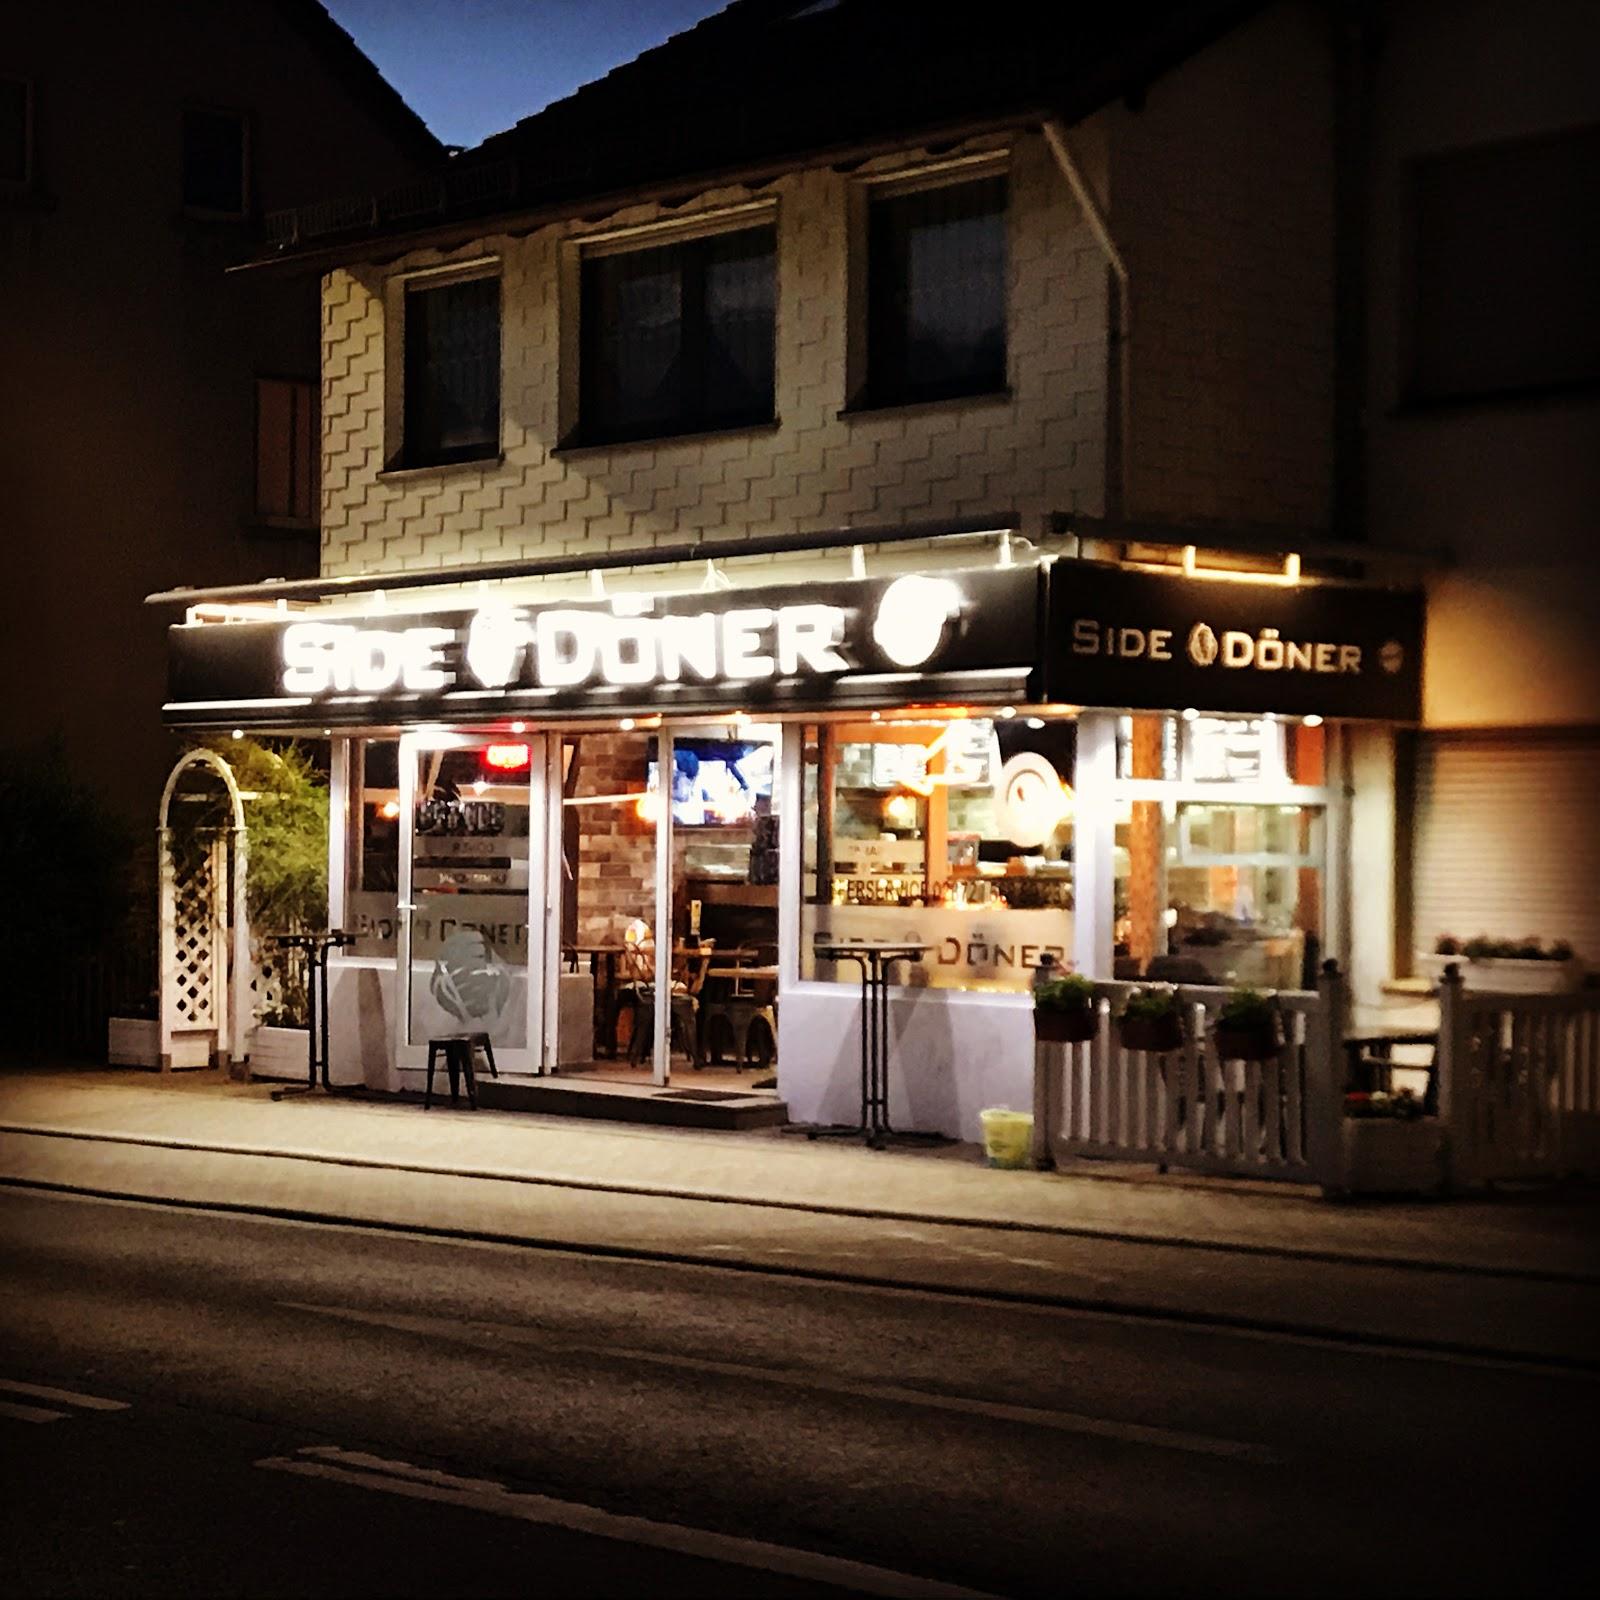 Restaurant "Side Döner" in  Hemer